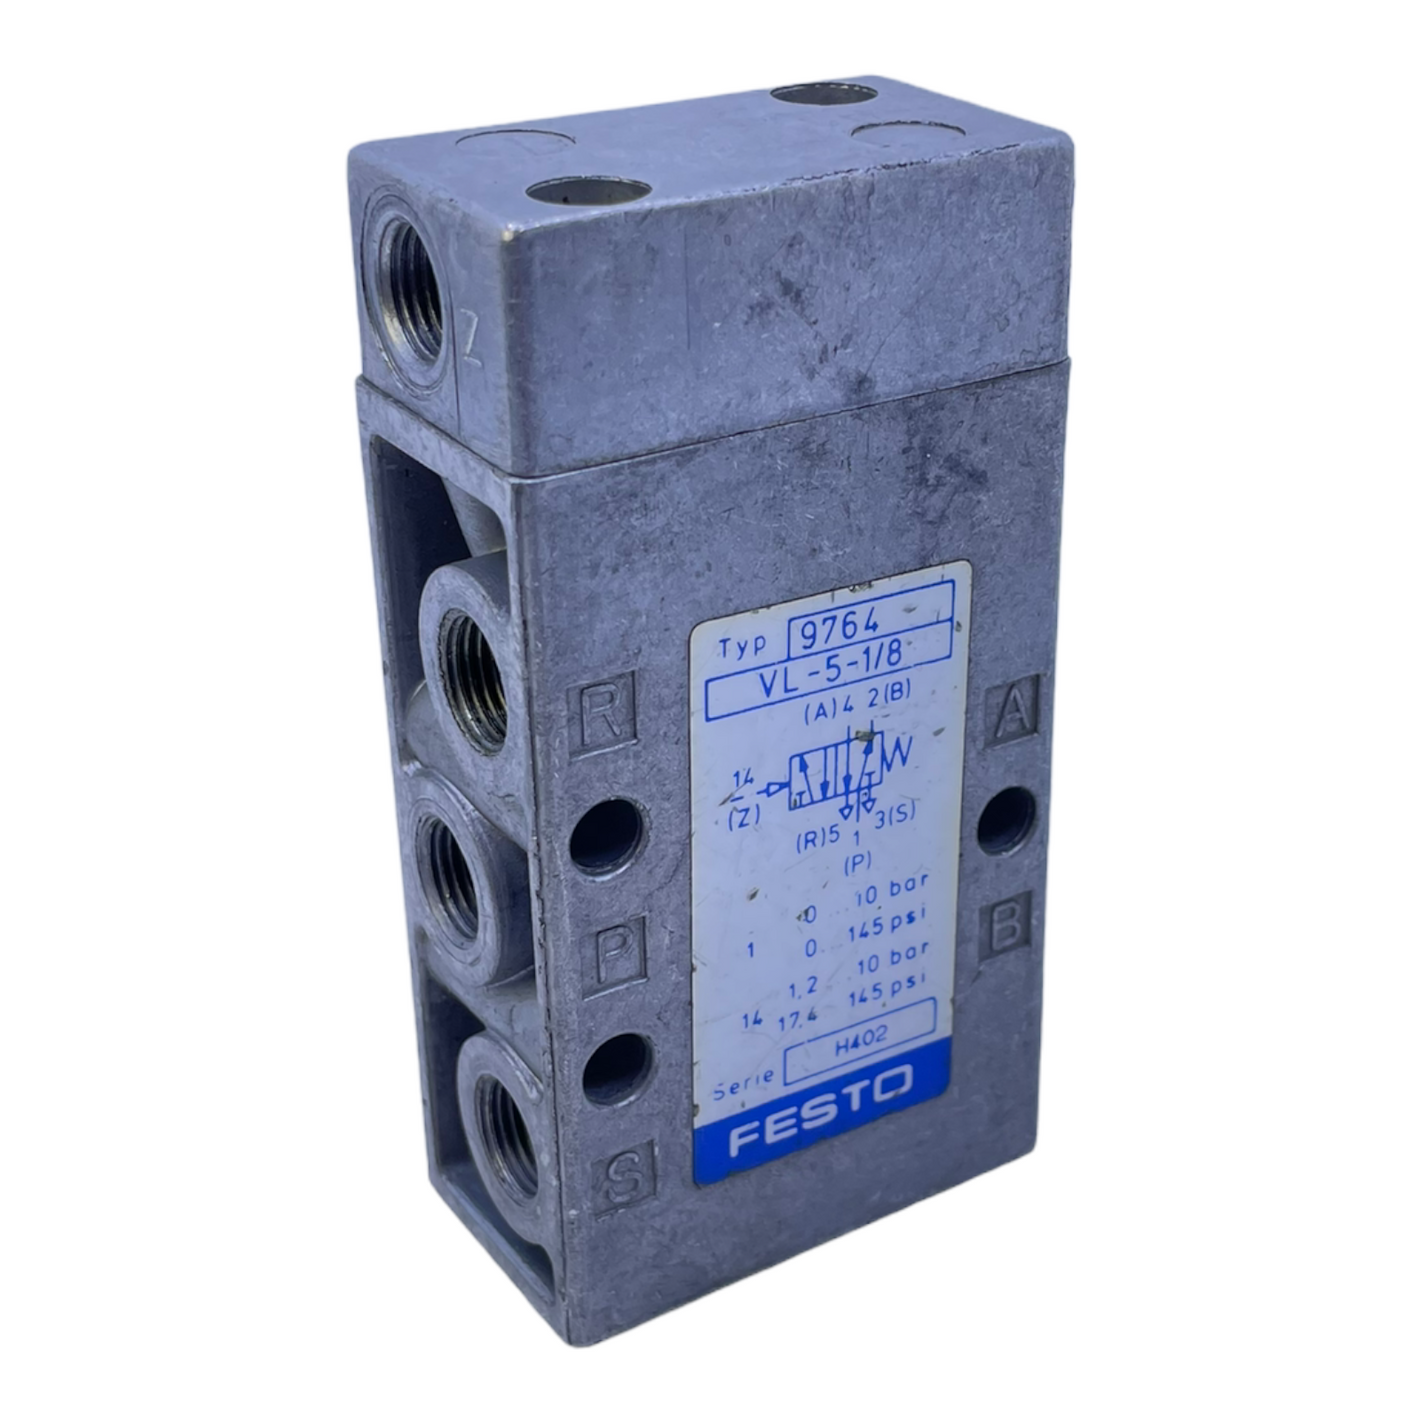 Festo VL-5-1/8 pneumatic valve 9764 0...10bar 1.2...10bar Festo pneumatic valve 